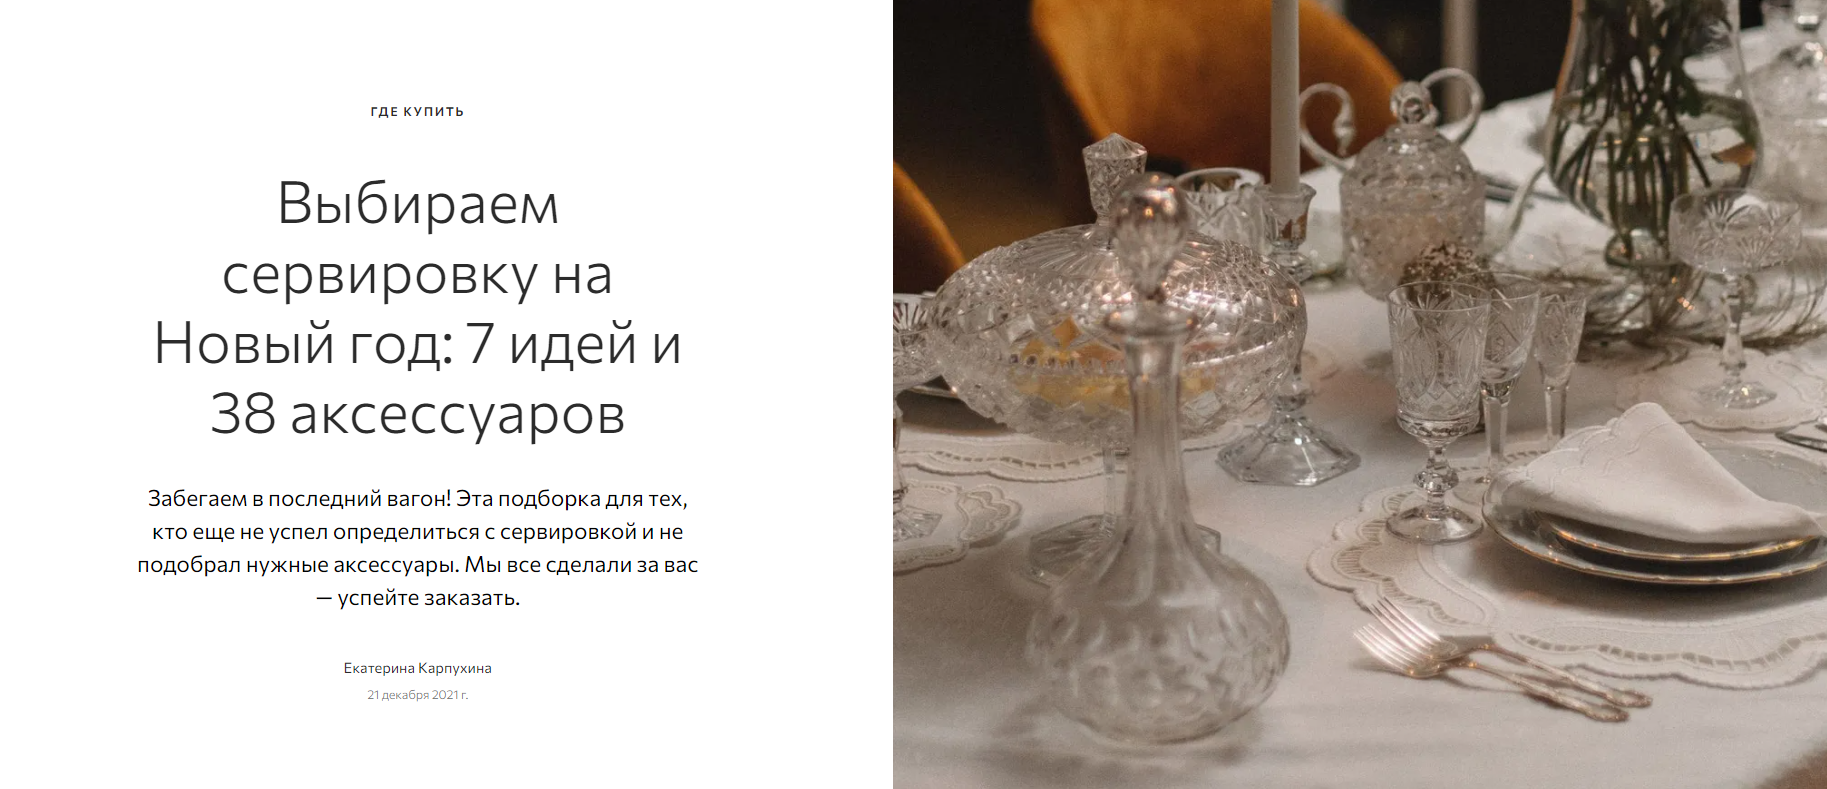 admagazine.ru: скатерть бренда Tkano в подборке "Выбираем сервировку на Новый год: 7 идей и 38 аксессуаров"